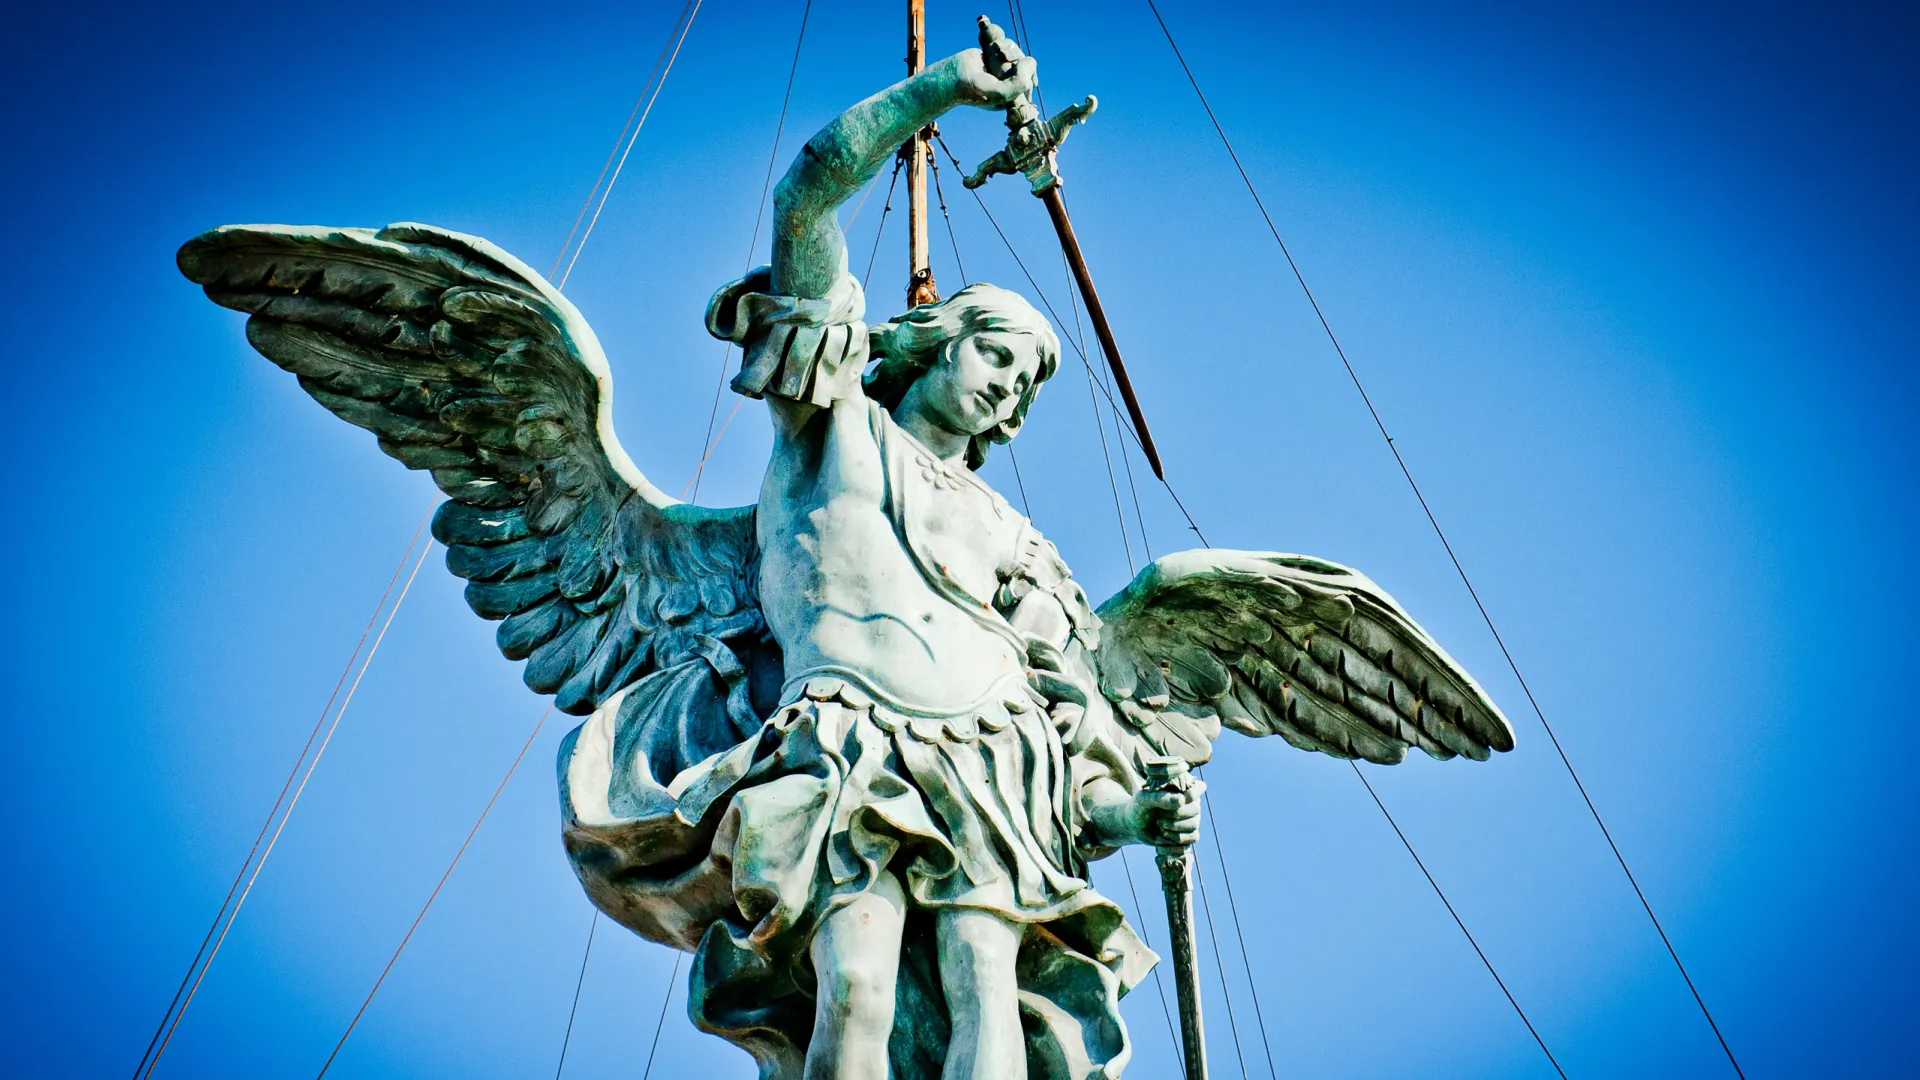 Статуя Архангела Михаила на вершине замка Святого Ангела в Риме. Фото: Shaun Jeffers / Shutterstock / Fotodom